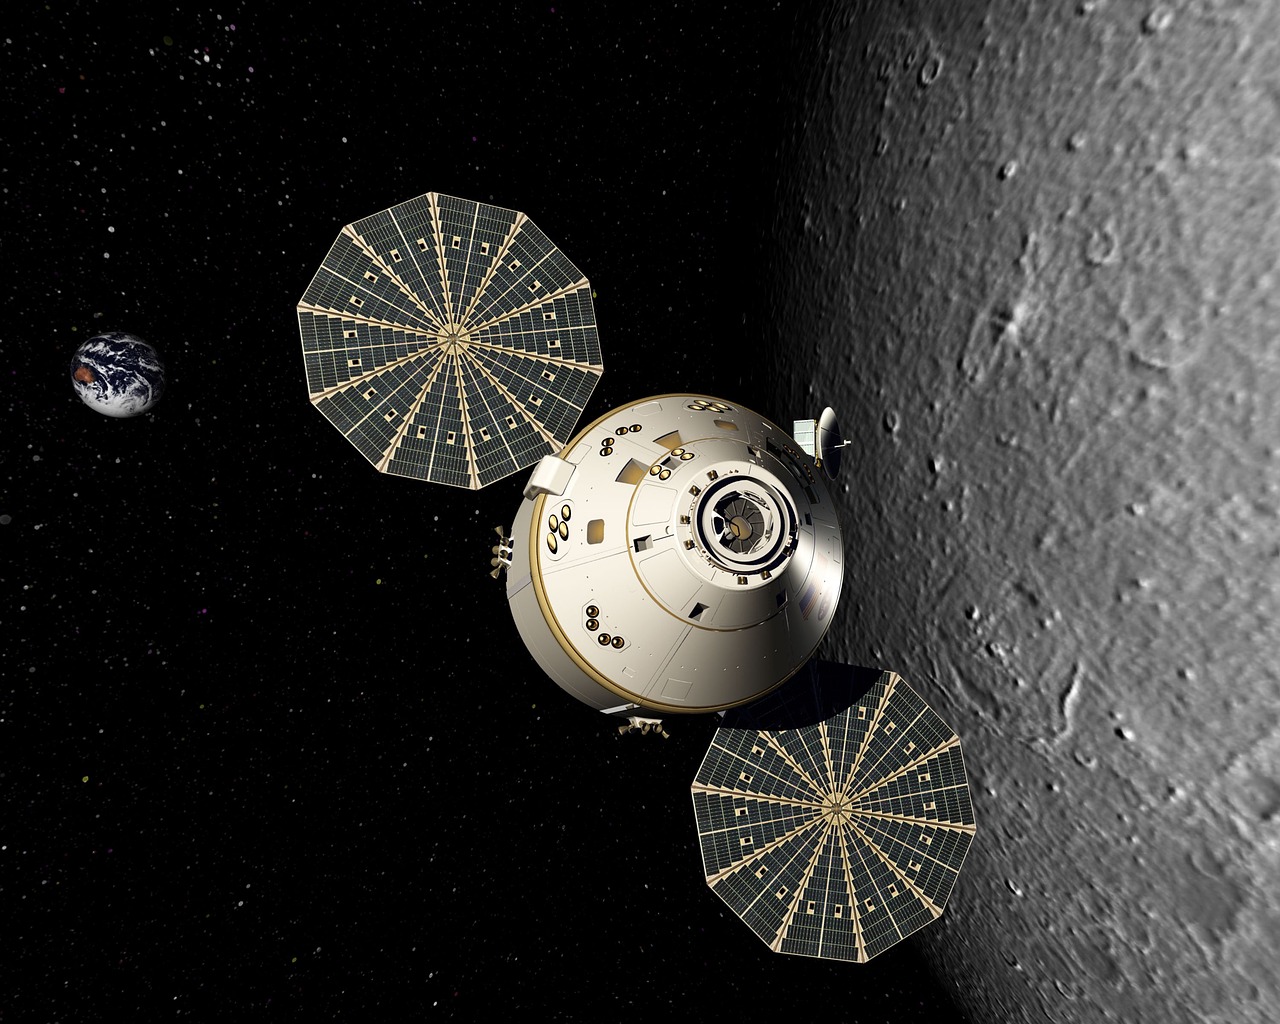 ¿Qué fue del destino de la nave espacial Orion?